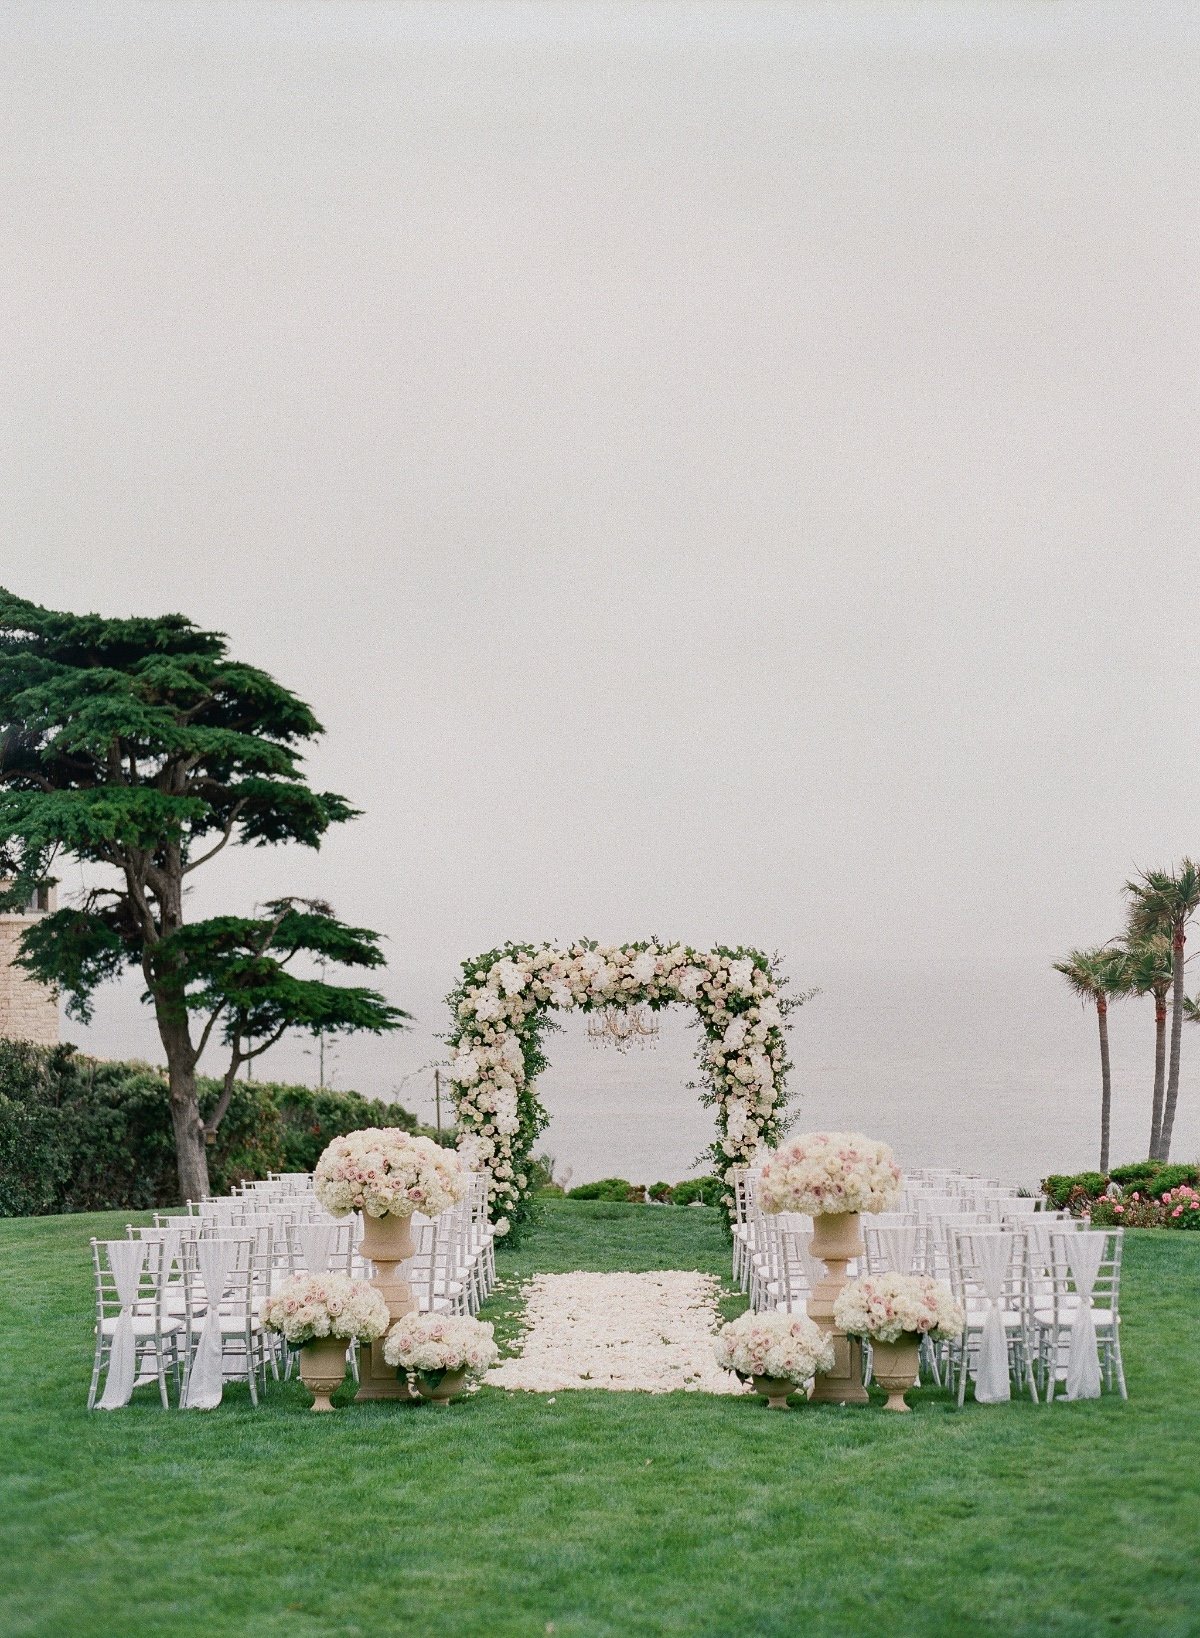 Cypress Sea Cove Wedding Venue in Santa Barbara